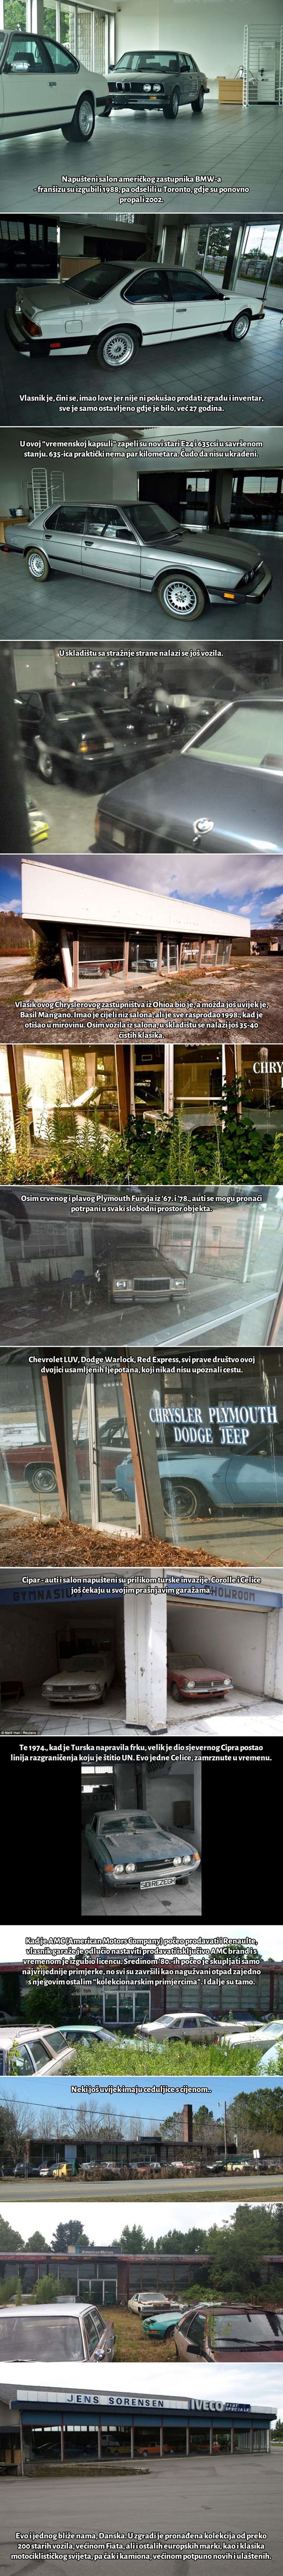 GALERIJA: Tužne fotke napuštenih auto-salona, koji još čuvaju usamljene ljepotane iz prošlosti